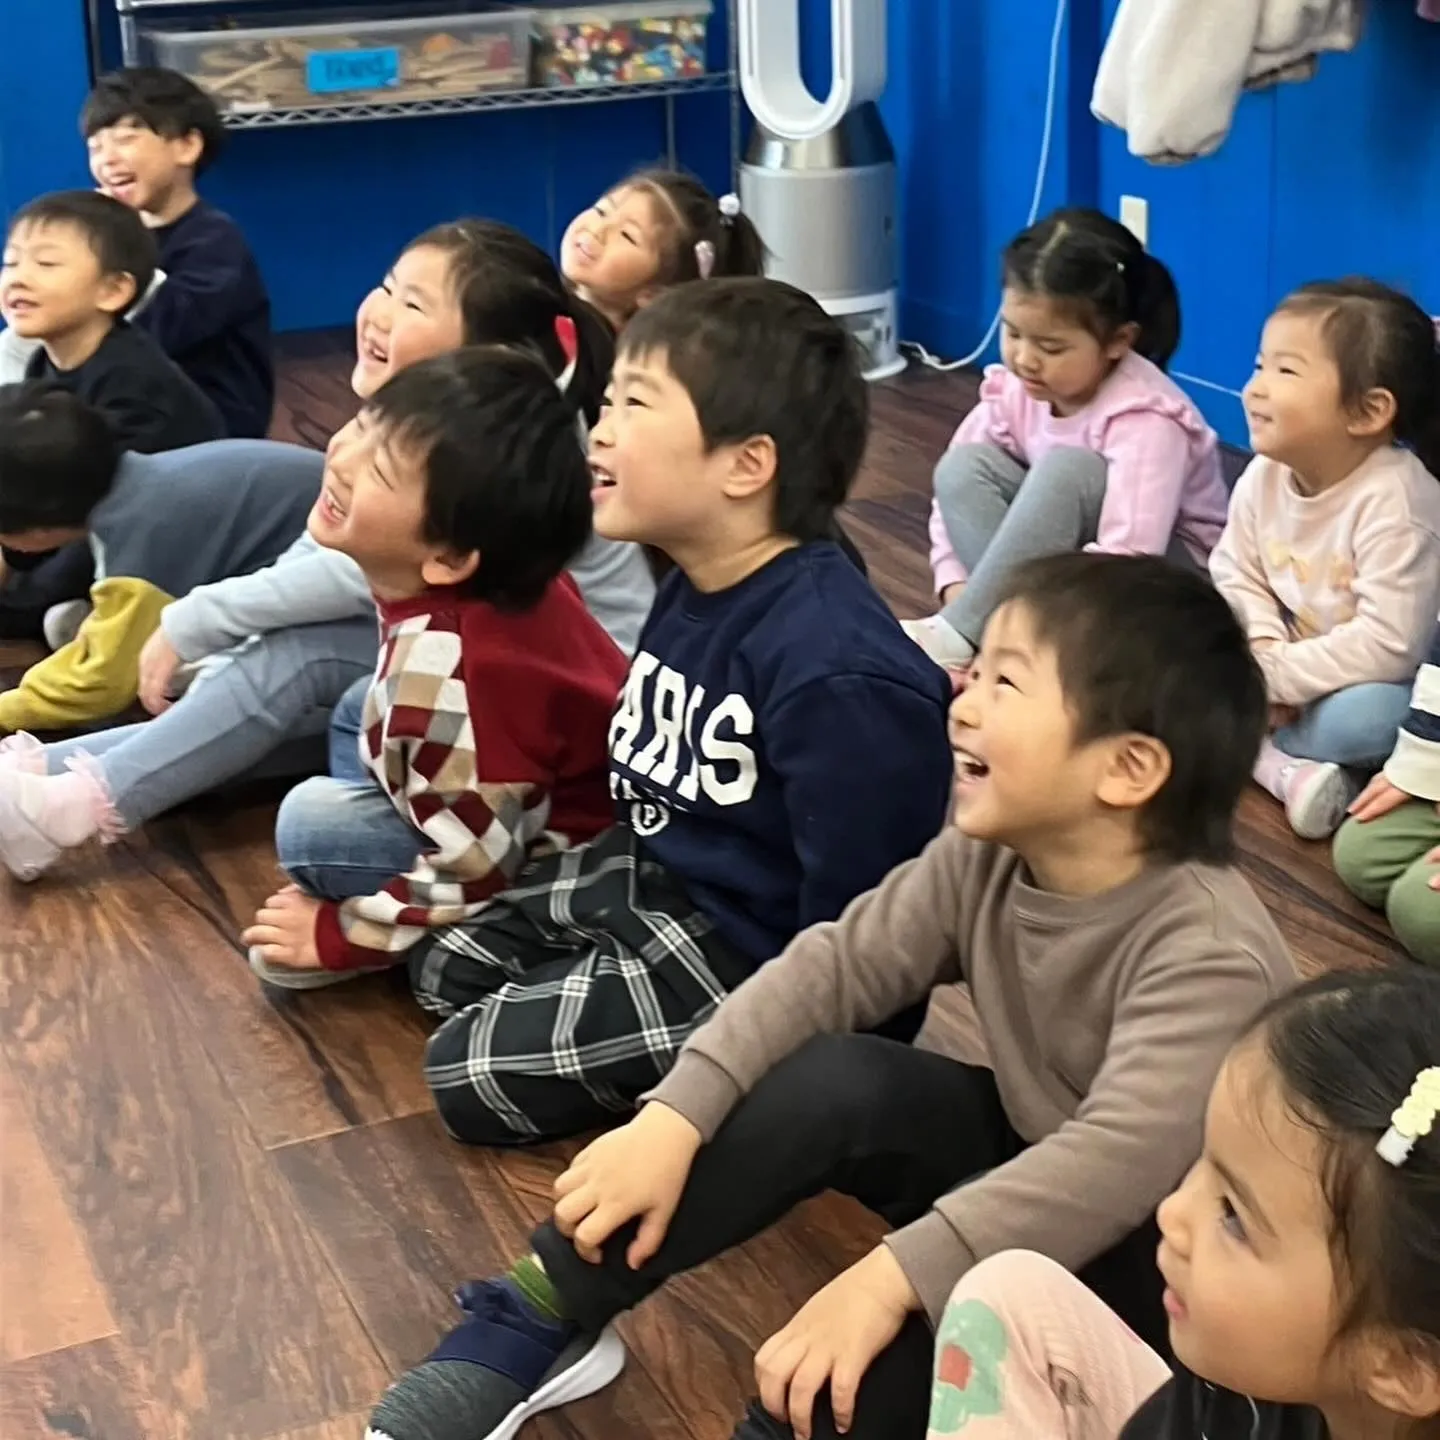 2/16(金) Today in Kinder class ...